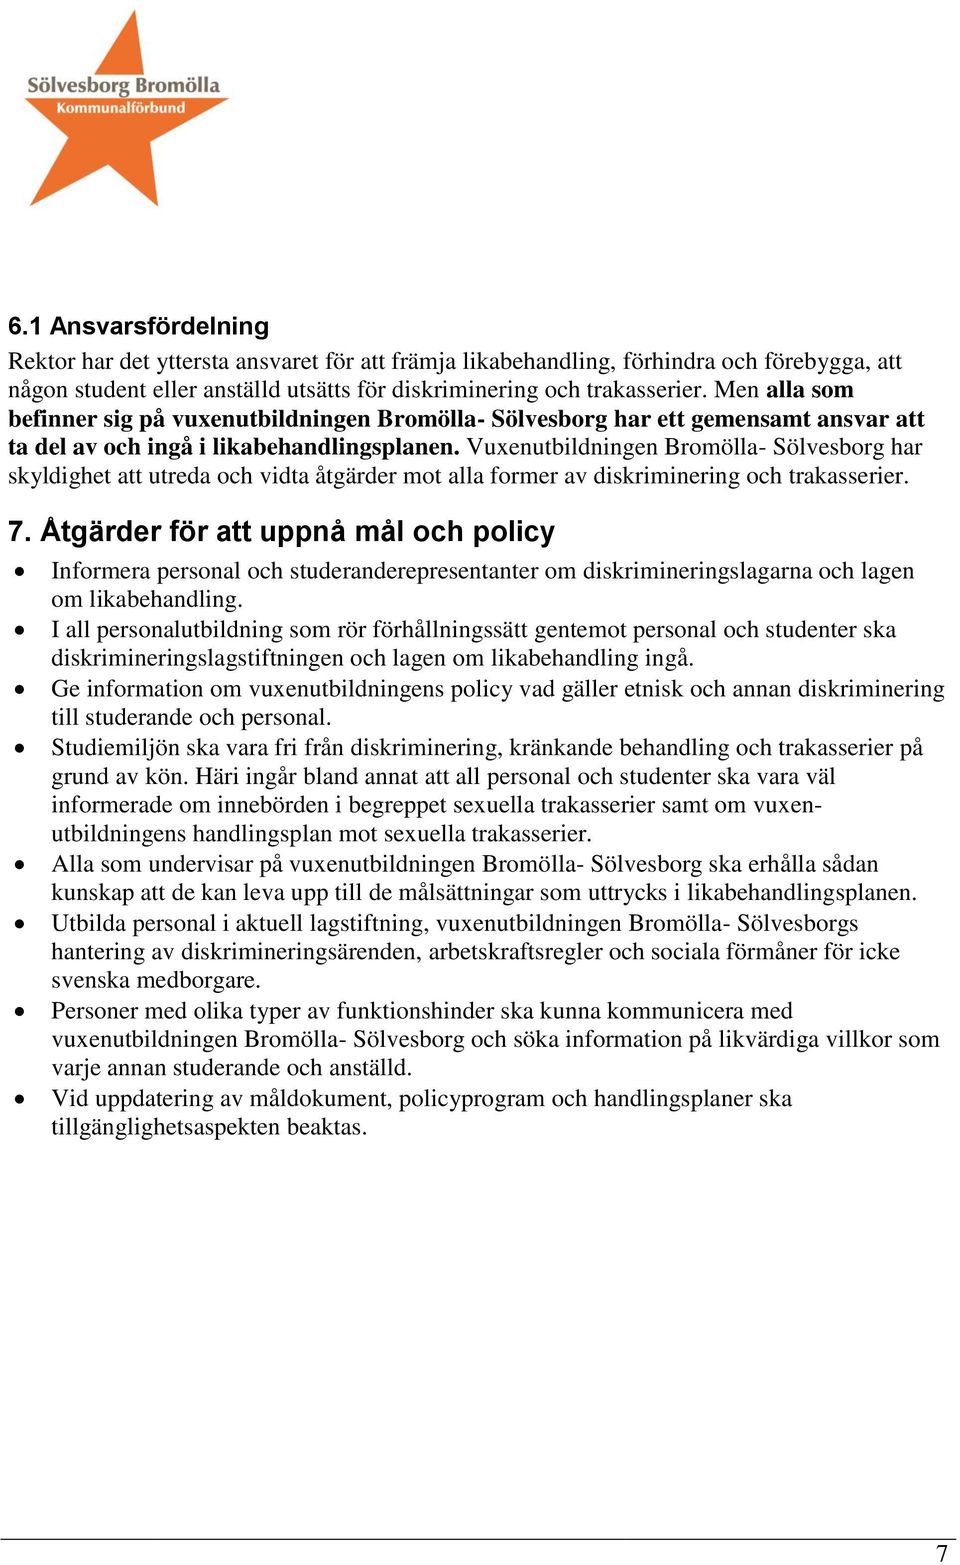 Vuxenutbildningen Bromölla- Sölvesborg har skyldighet att utreda och vidta åtgärder mot alla former av diskriminering och trakasserier. 7.